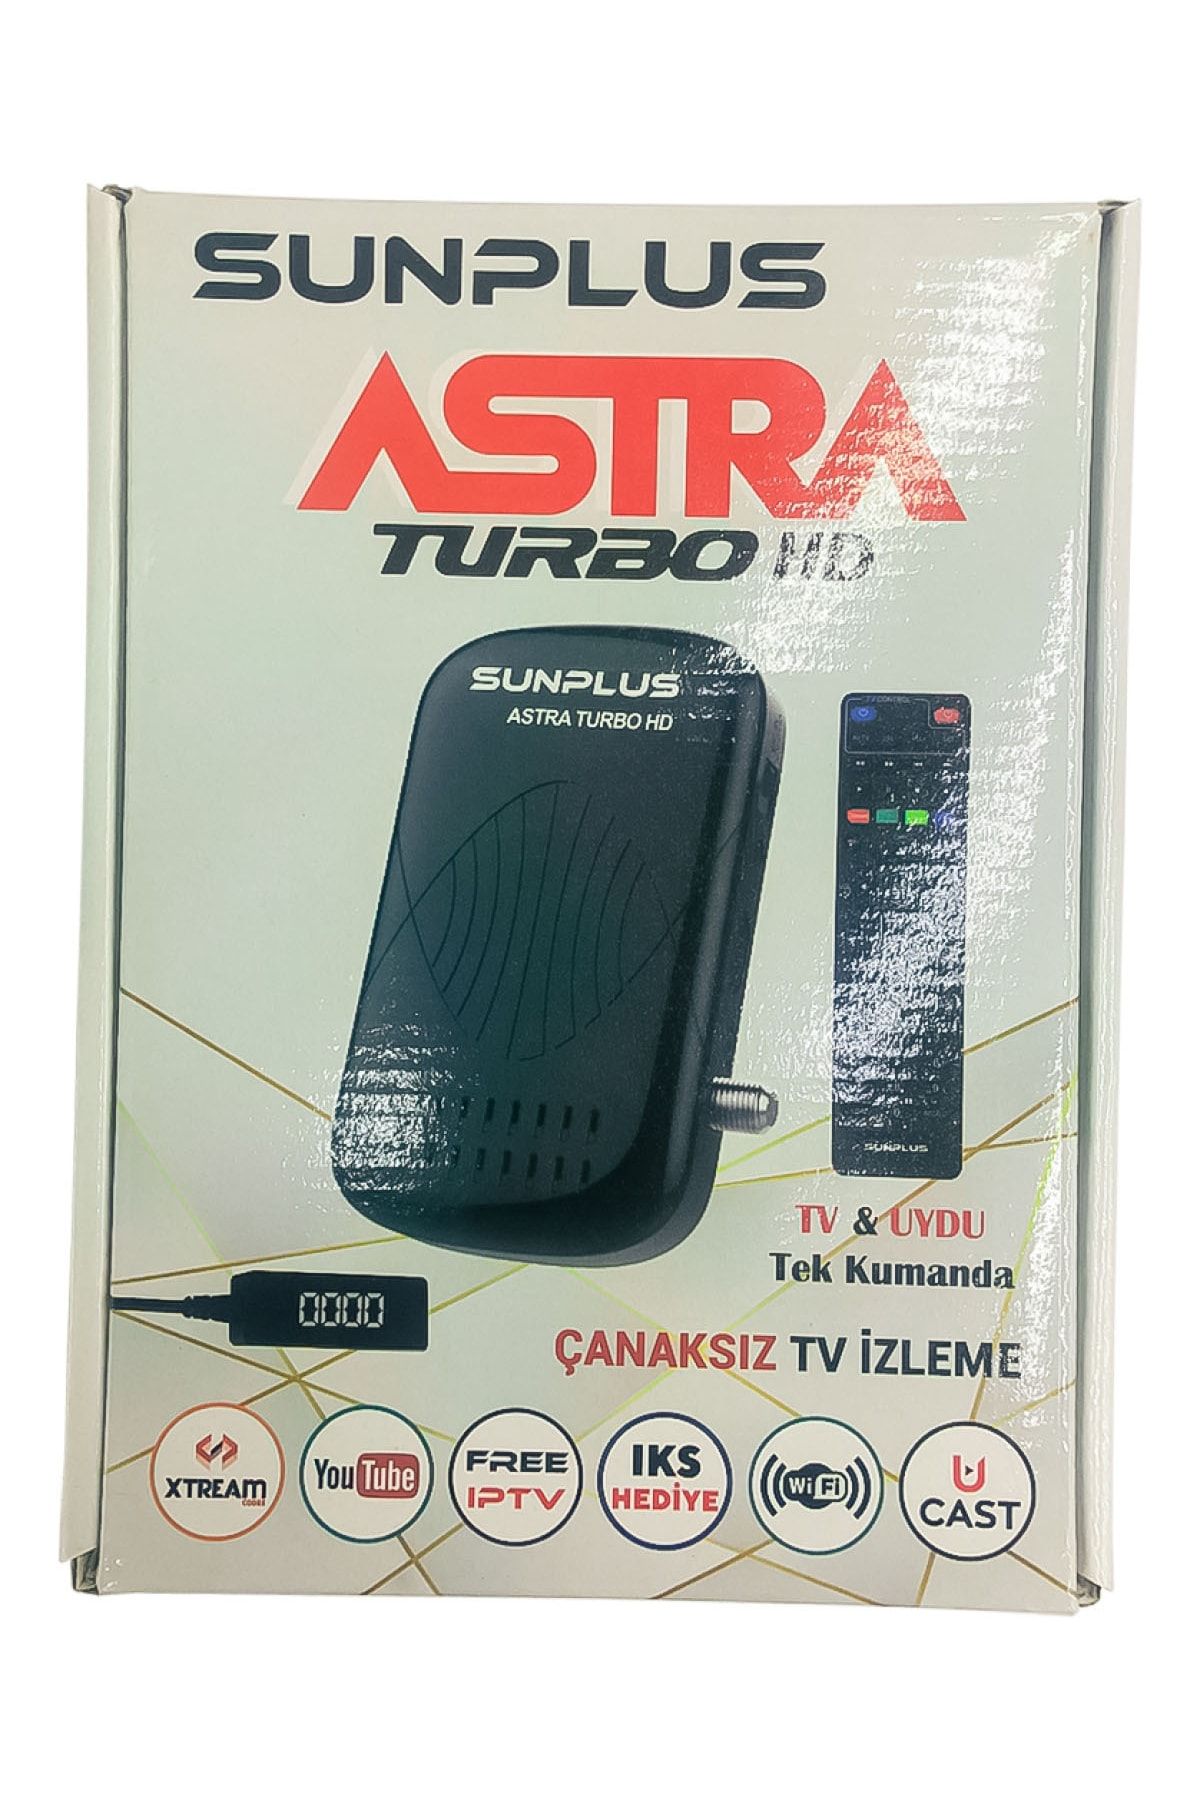 Sunplus Astra Turbo Hd Full Hd Çanaksız Uydu Alıcı Akıllı Kumanda